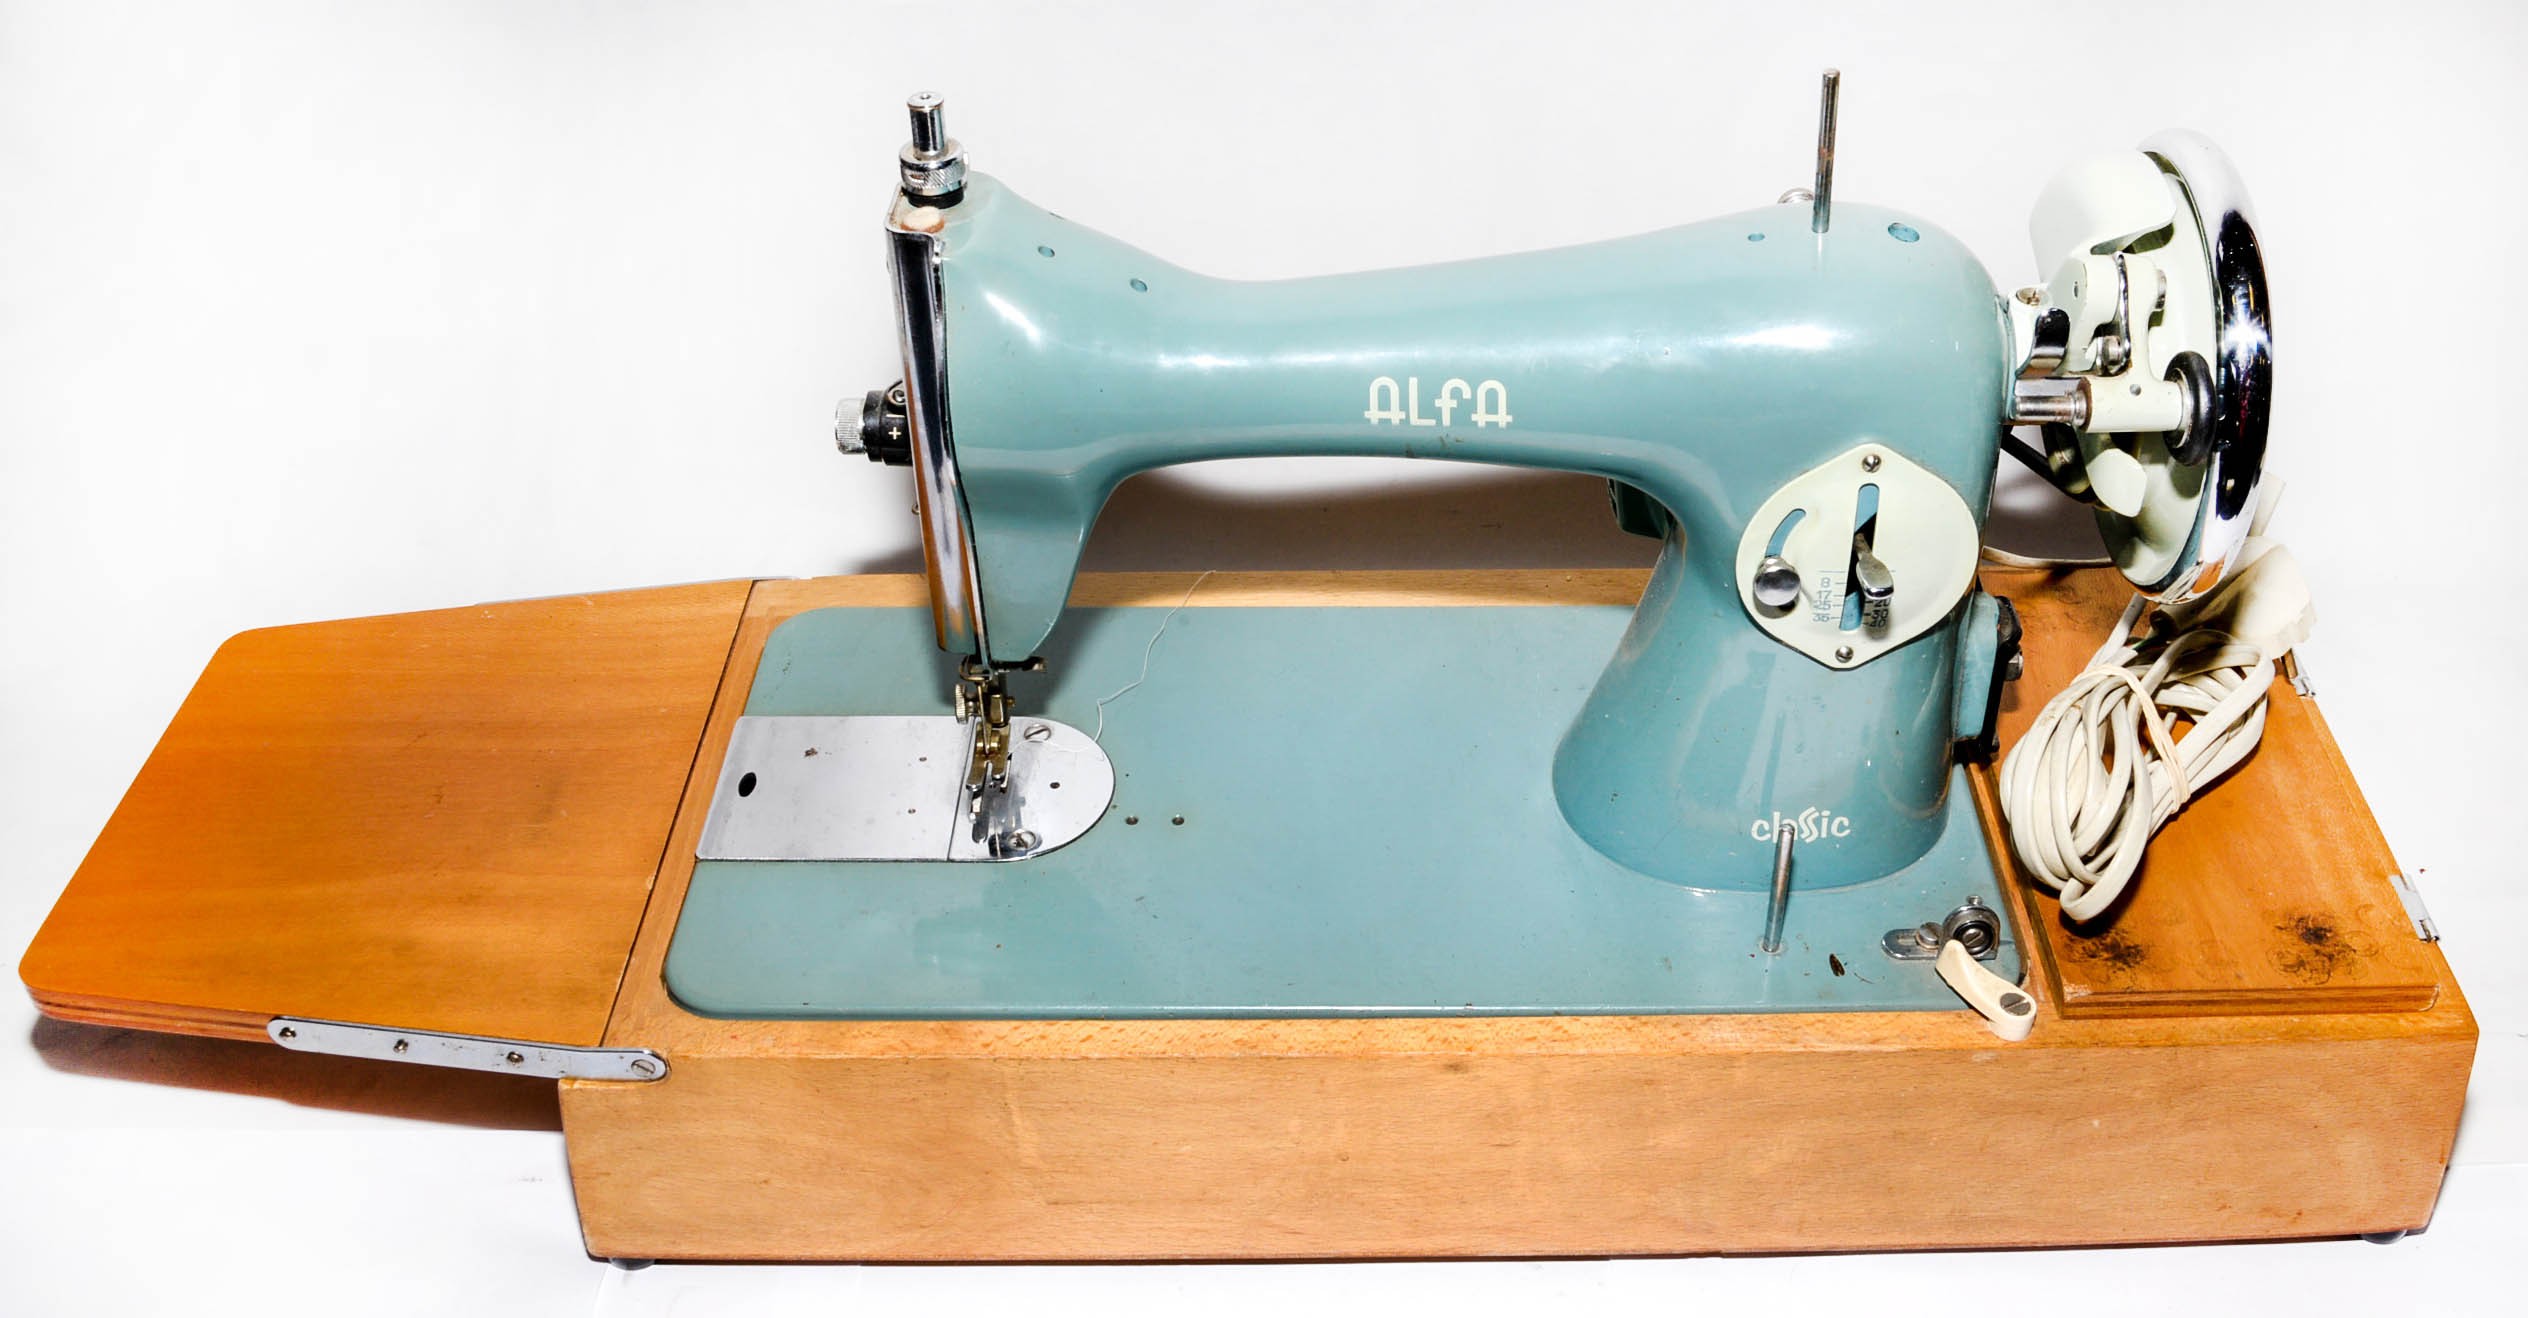 maquina de coser alfa de los años 60-70 - Compra venta en